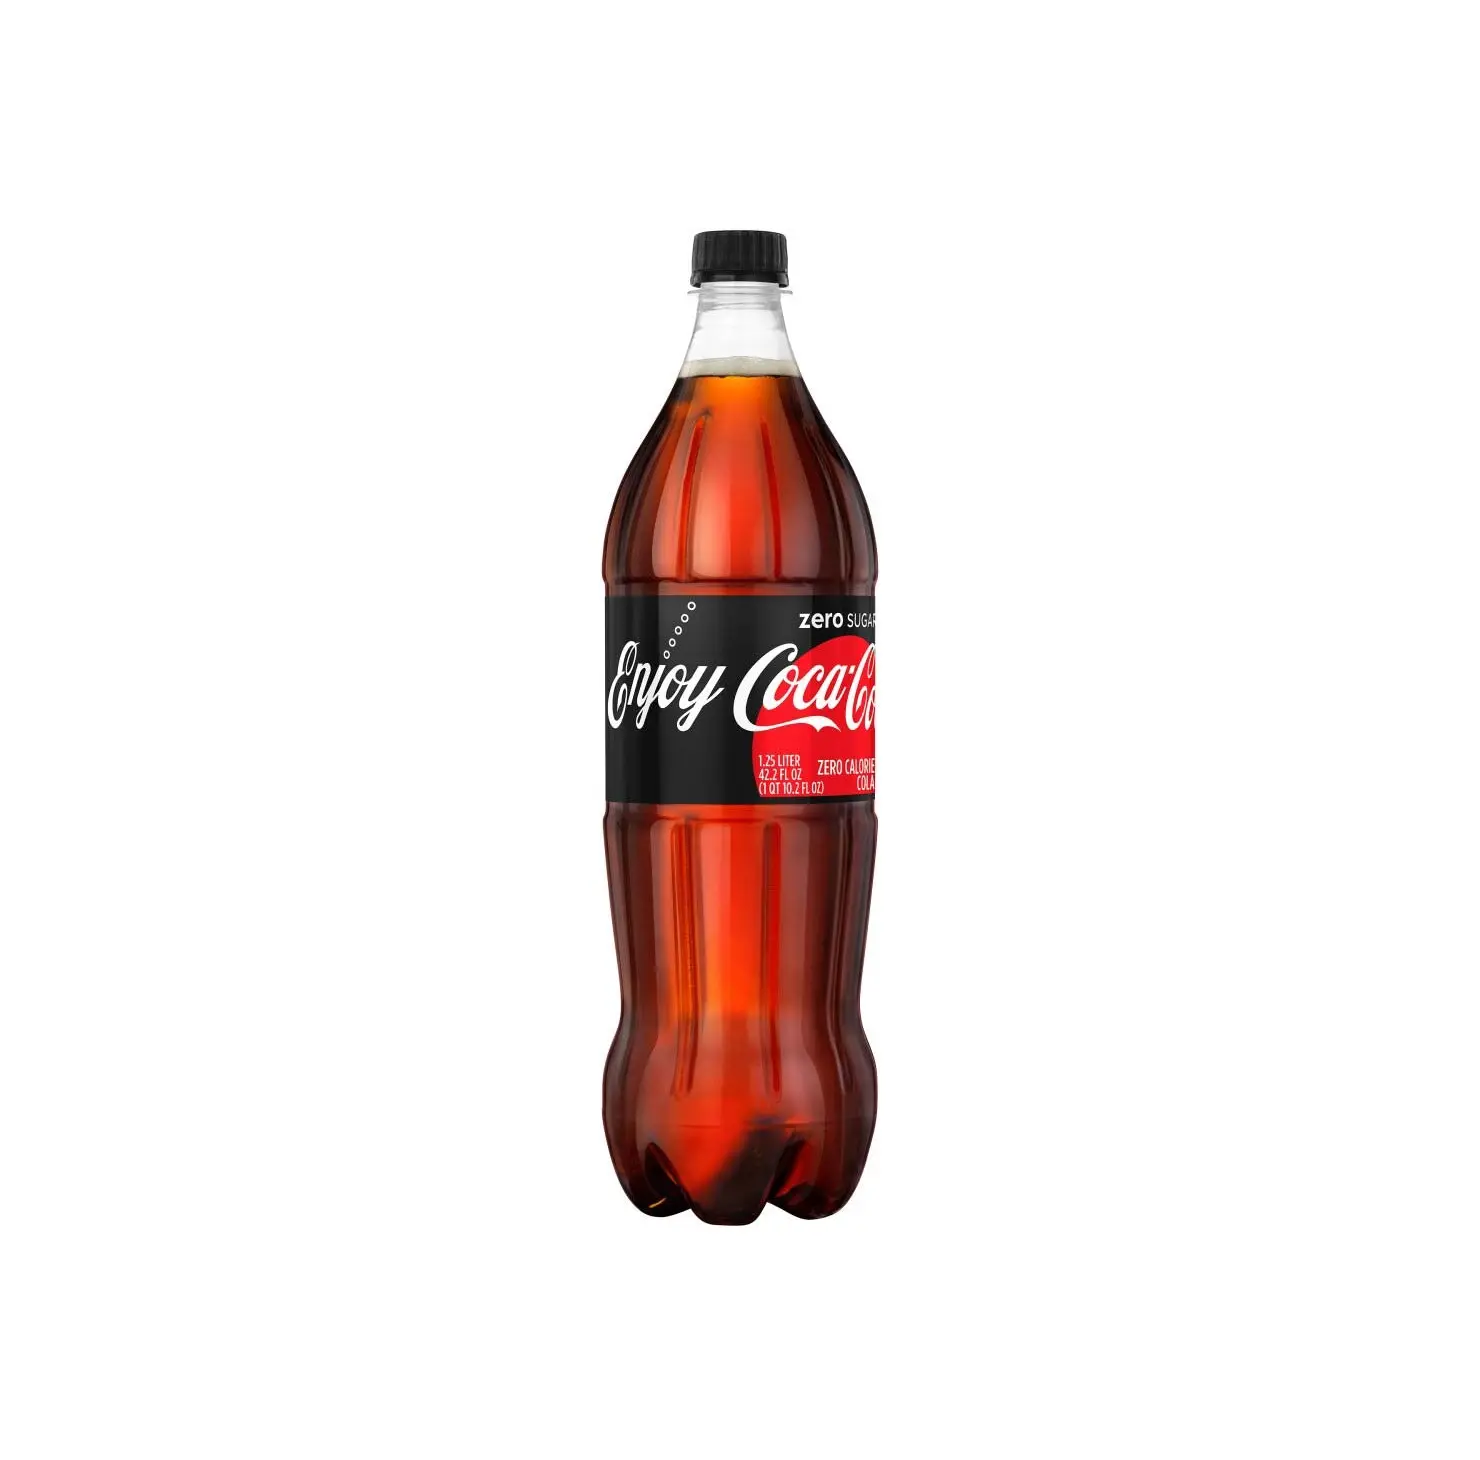 Quantità all'ingrosso bevanda gassata Coca-Cola classica a basso costo originale Coca-Cola